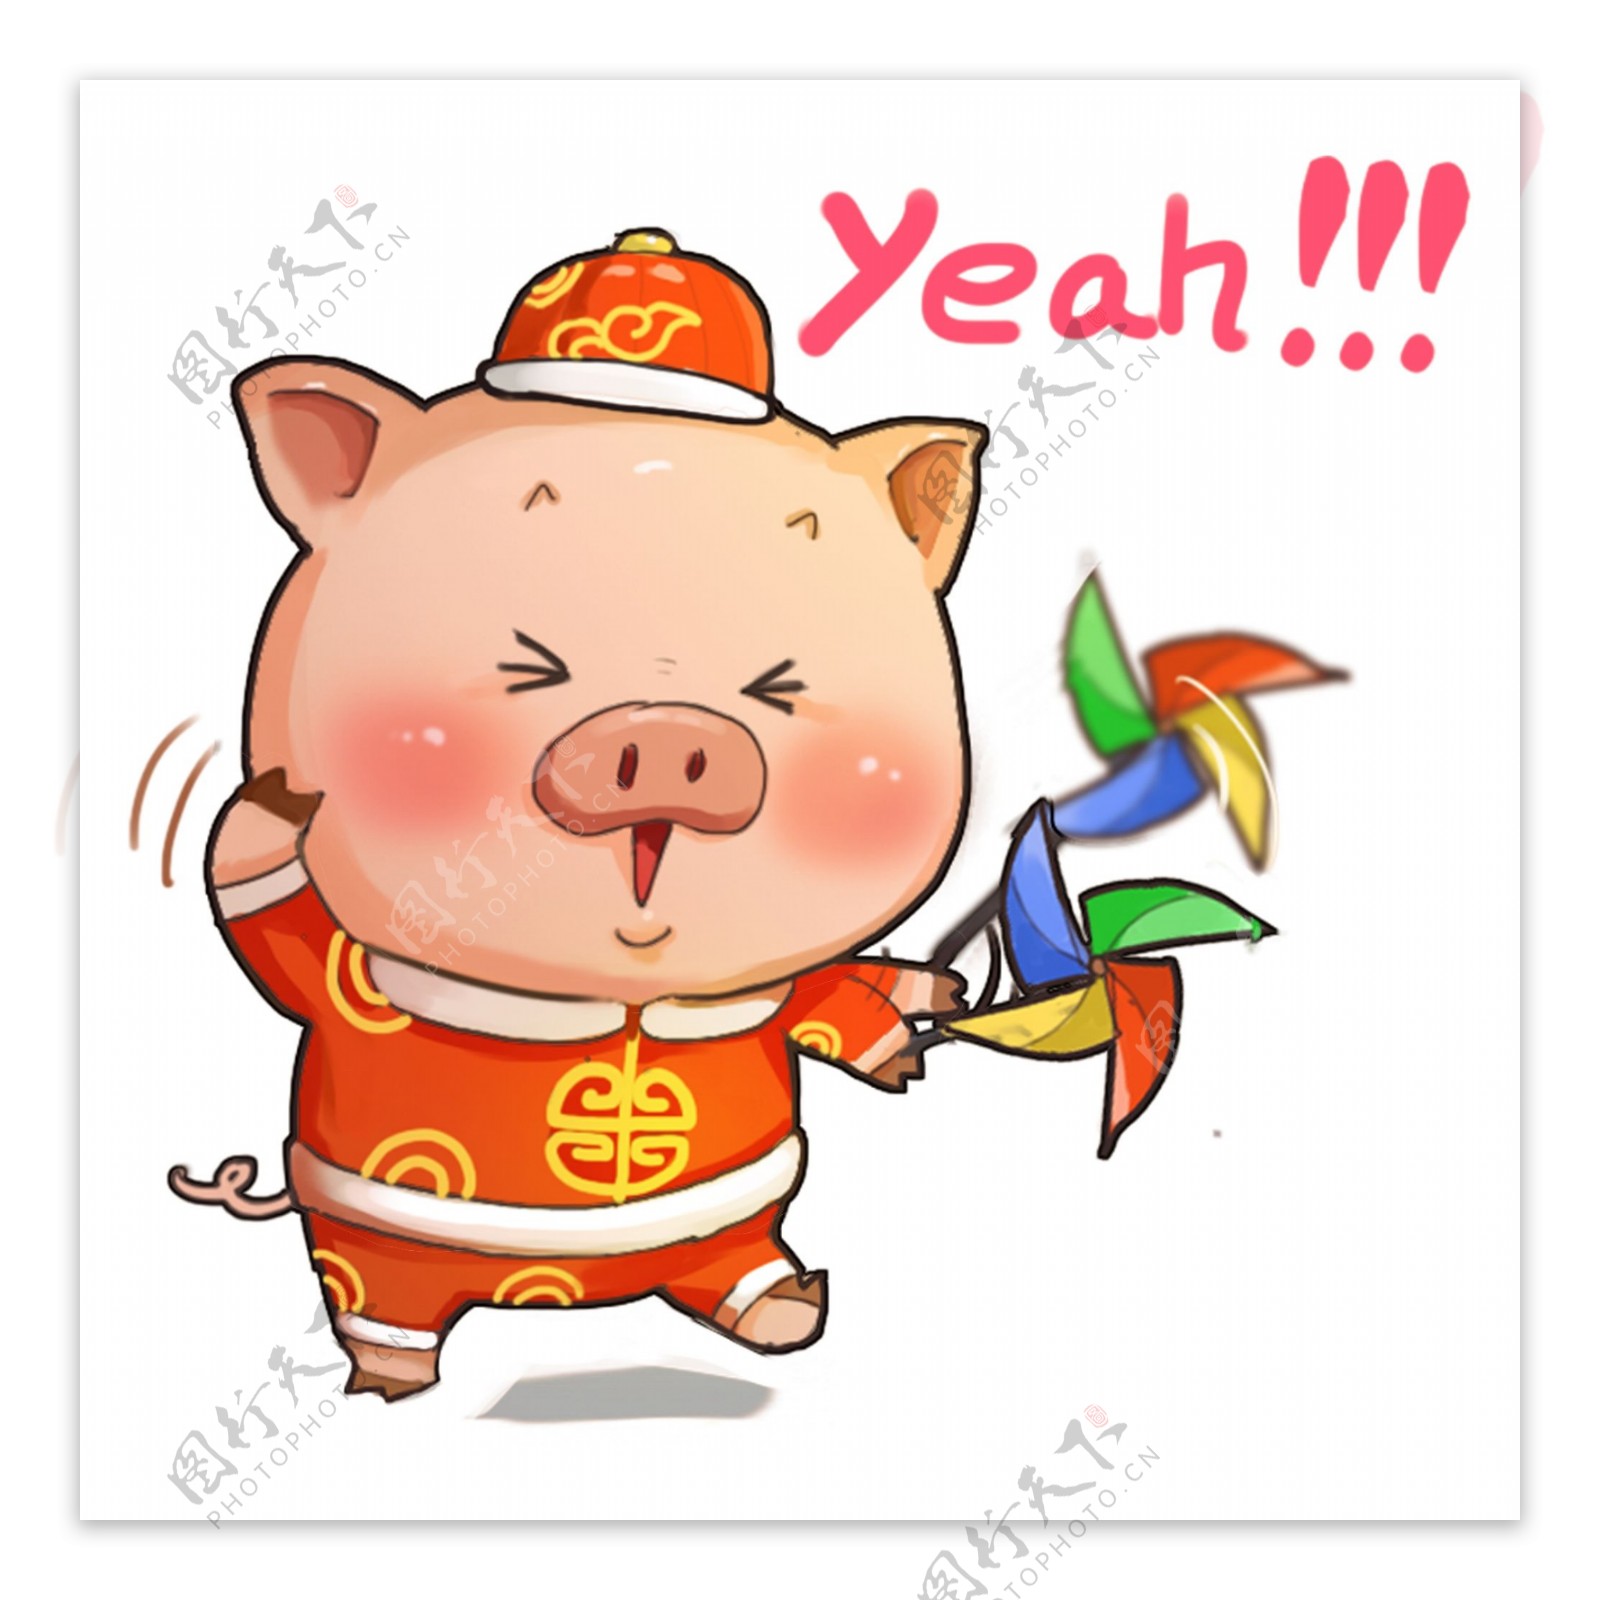 猪猪玩风车唐装卡通